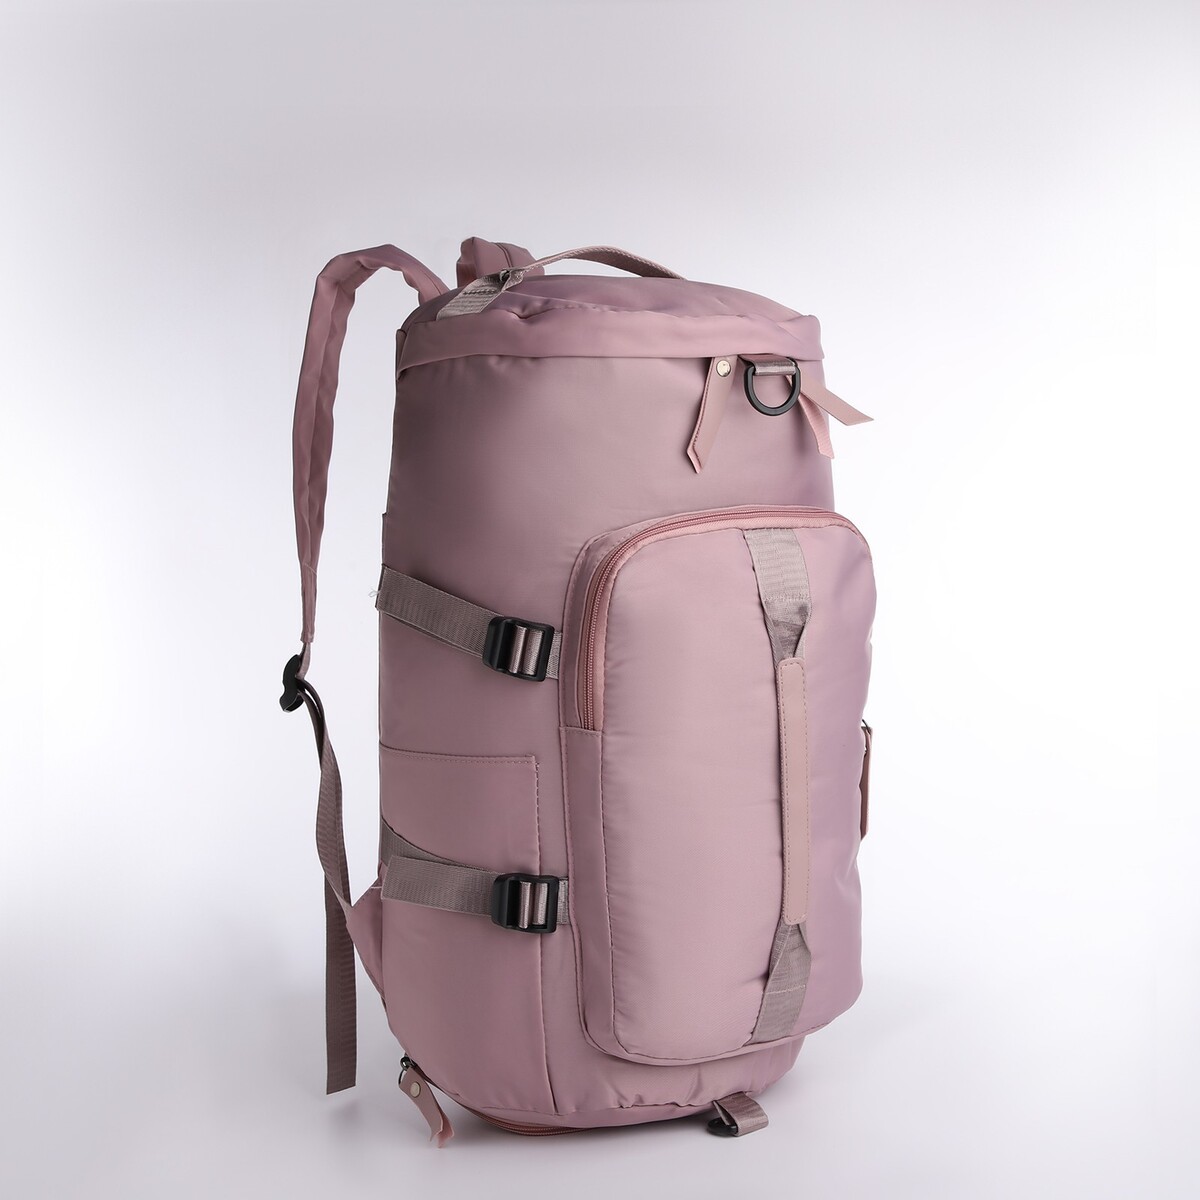 Рюкзак-сумка на молнии, 4 наружных кармана, отделение для обуви, цвет розовый рюкзак отдел на молнии 2 наружных кармана розовый